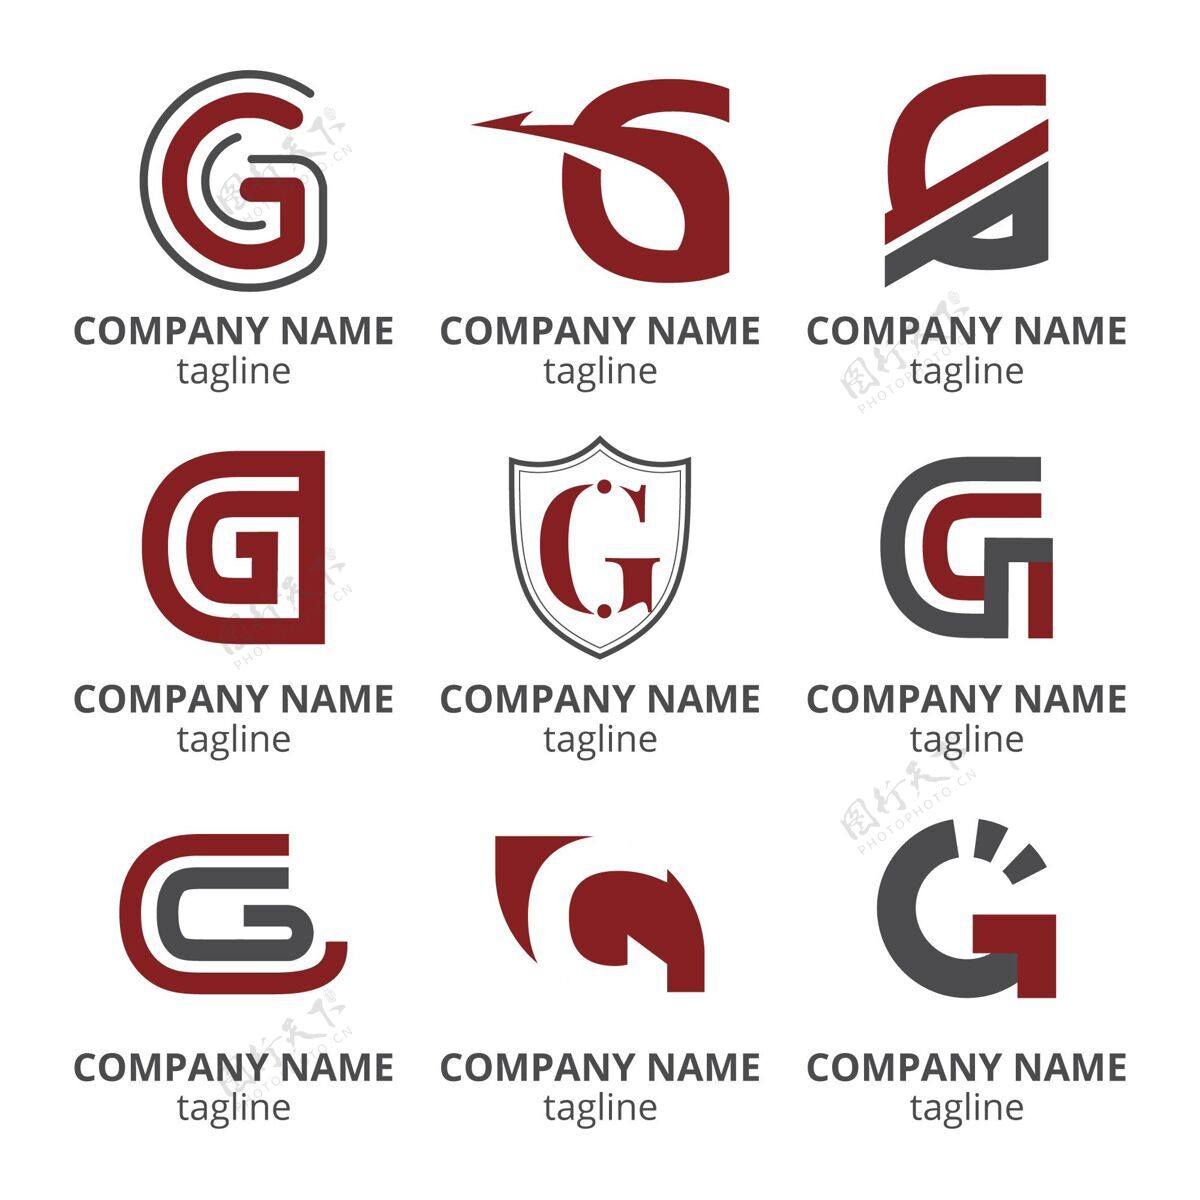 平面设计平面设计g字母标志包品牌标志标志模板